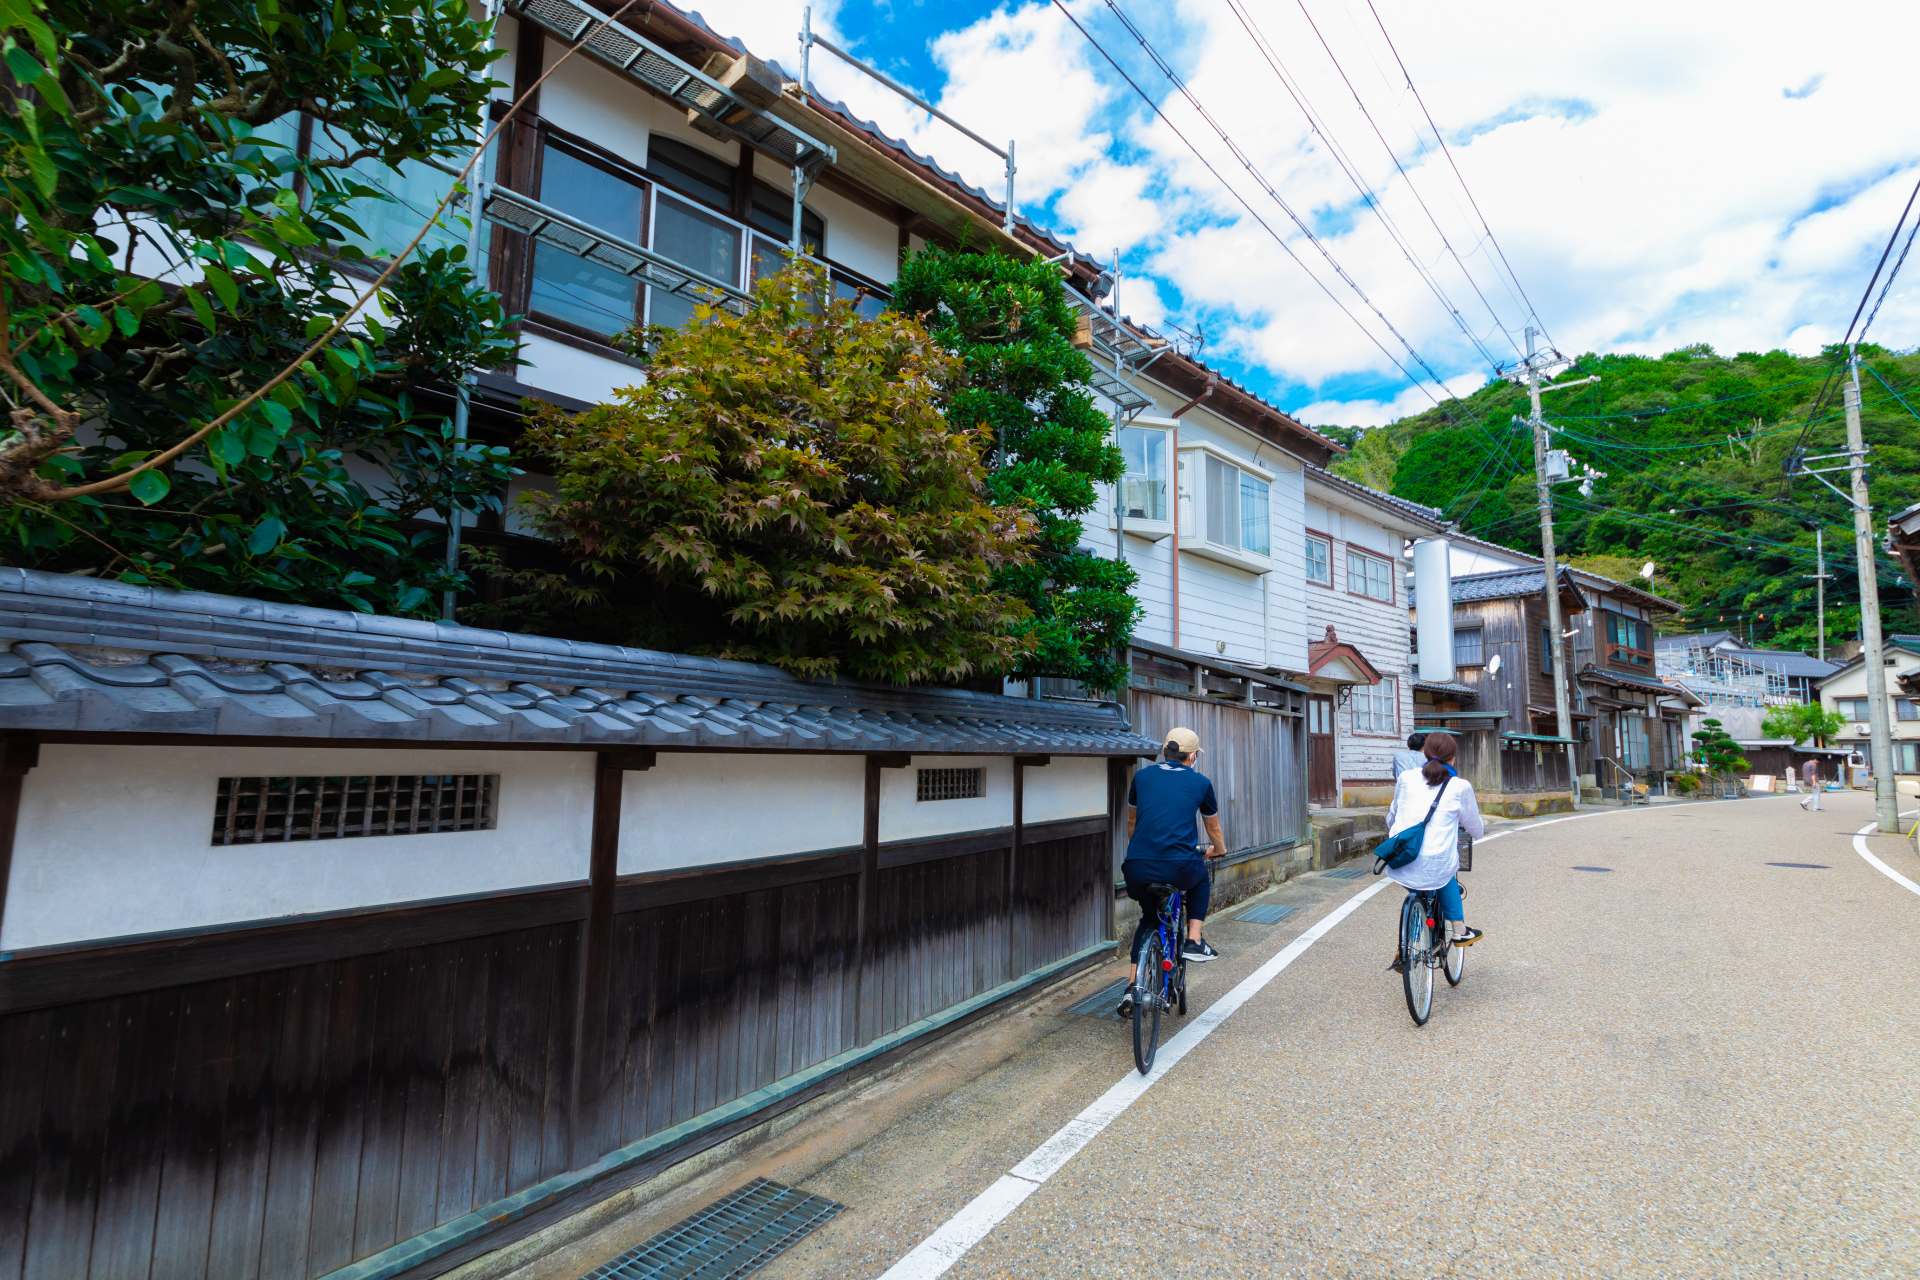 Pedalear por el pueblo de Ine. Hay cervecerías locales de sake japonés y cafeterías con cobertizos para botes.